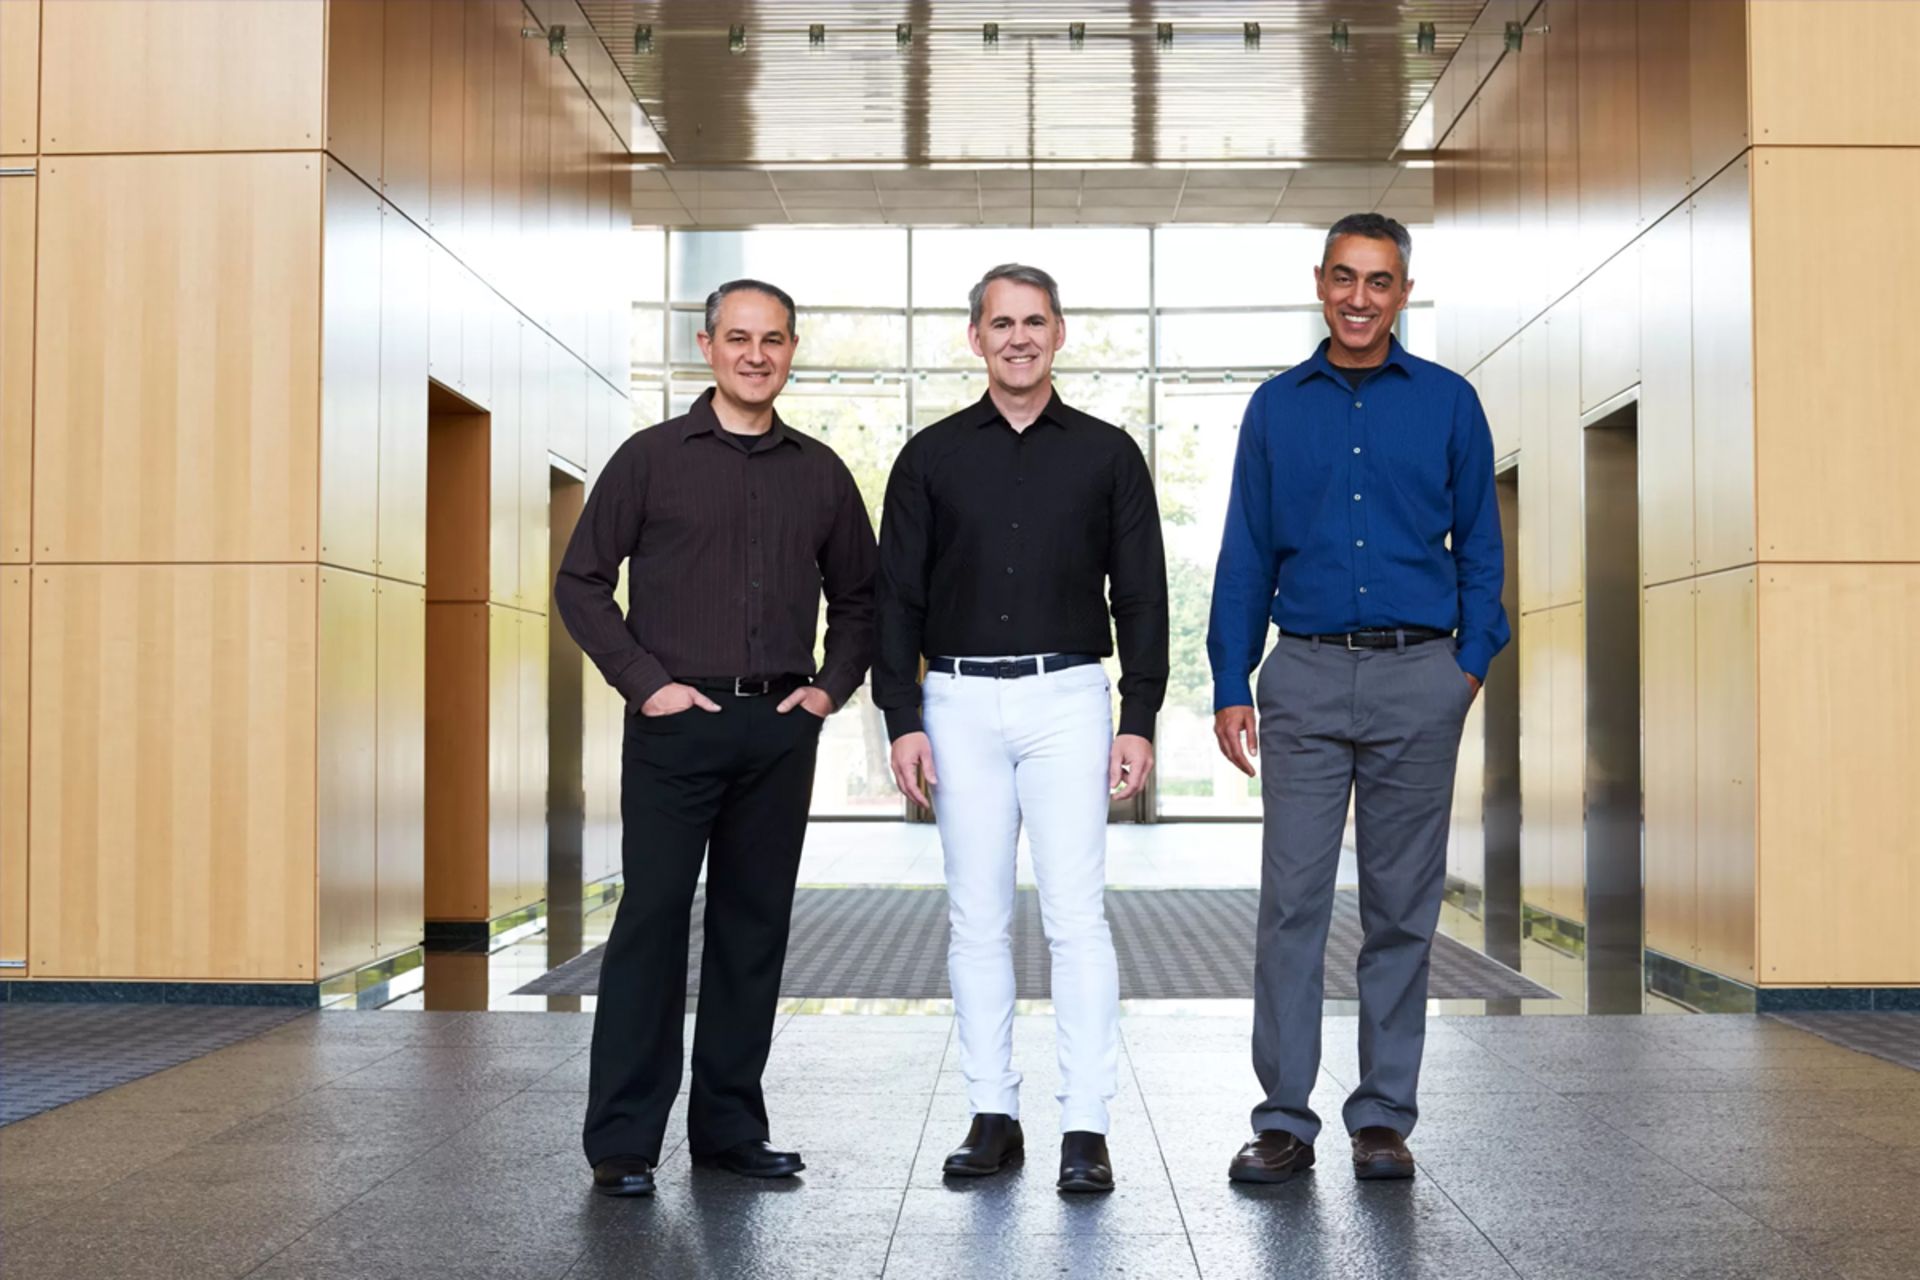 مرجع متخصصين ايران بنيان گذاران نوويا / Nuvia سه مرد درحالت ايستاد مشغول لبخند